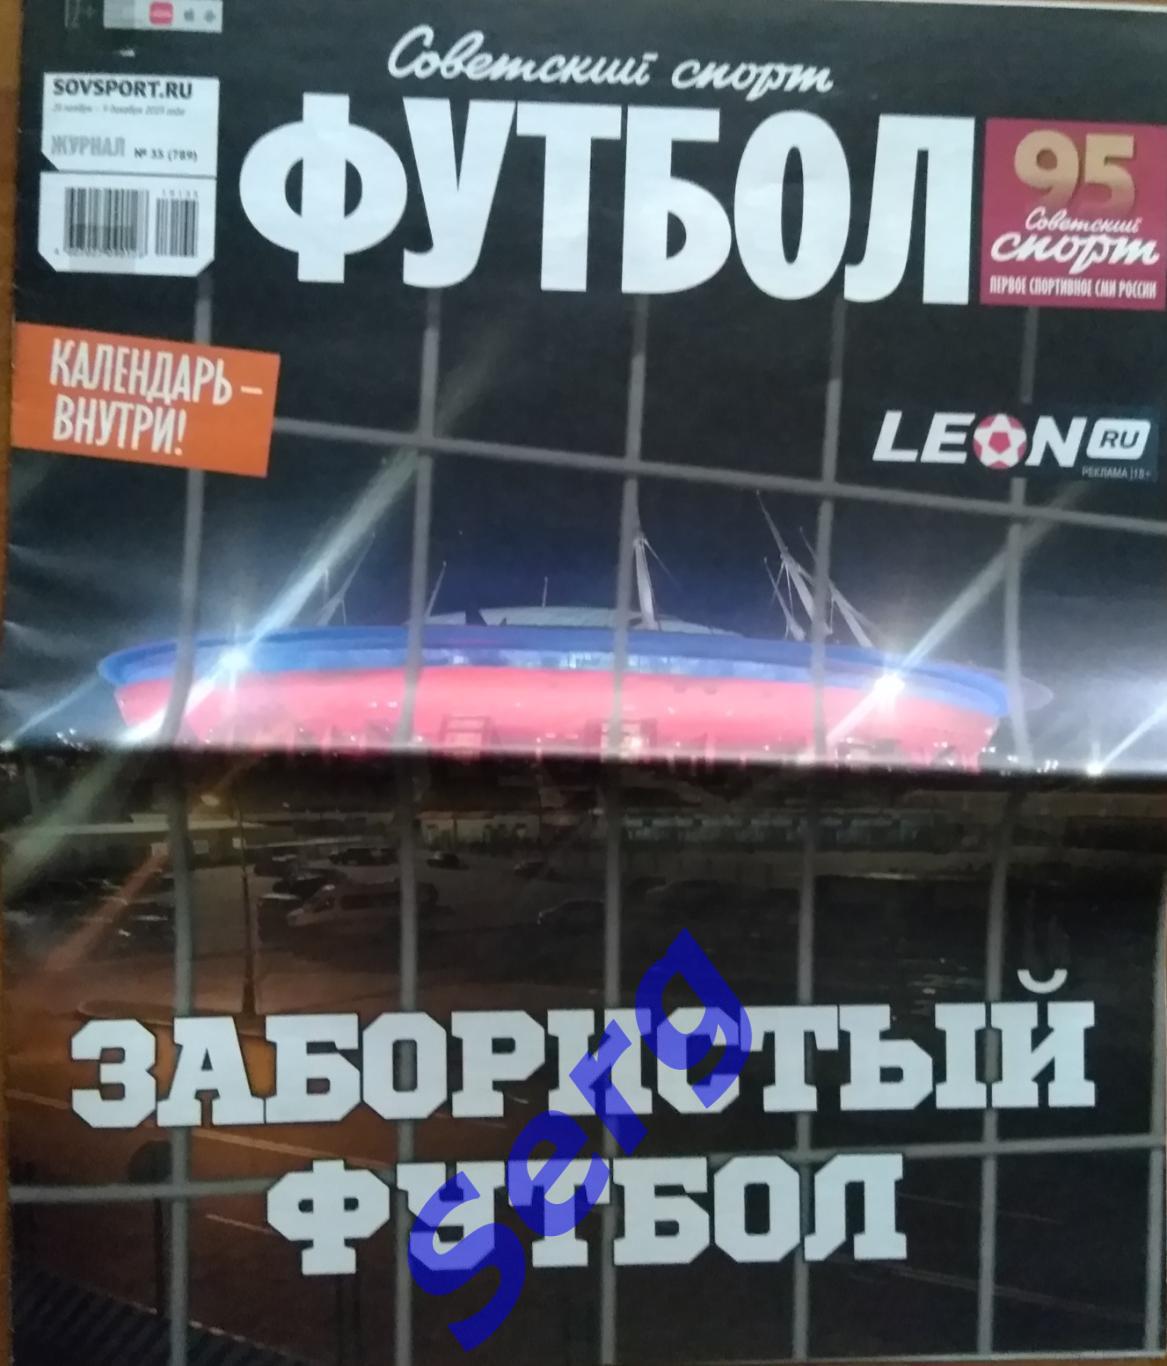 Журнал Советский спорт Футбол (ССФ) №35 26.11-09.12.2019 год